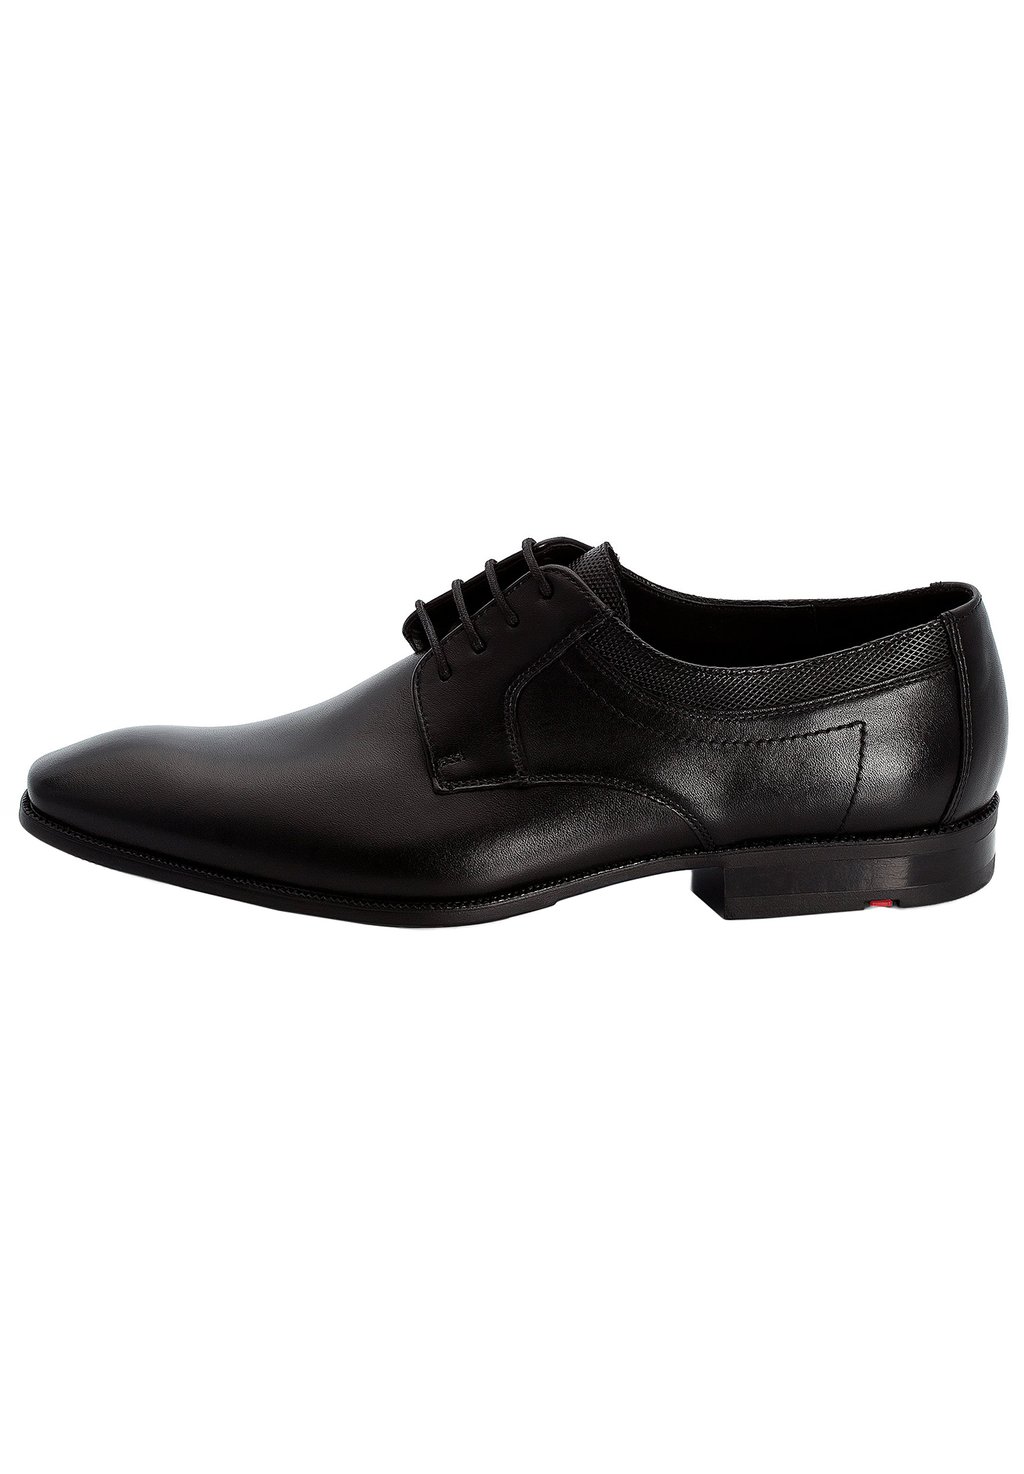 Деловые туфли на шнуровке LACOUR Lloyd, цвет schwarz деловые туфли на шнуровке mare lloyd цвет braun